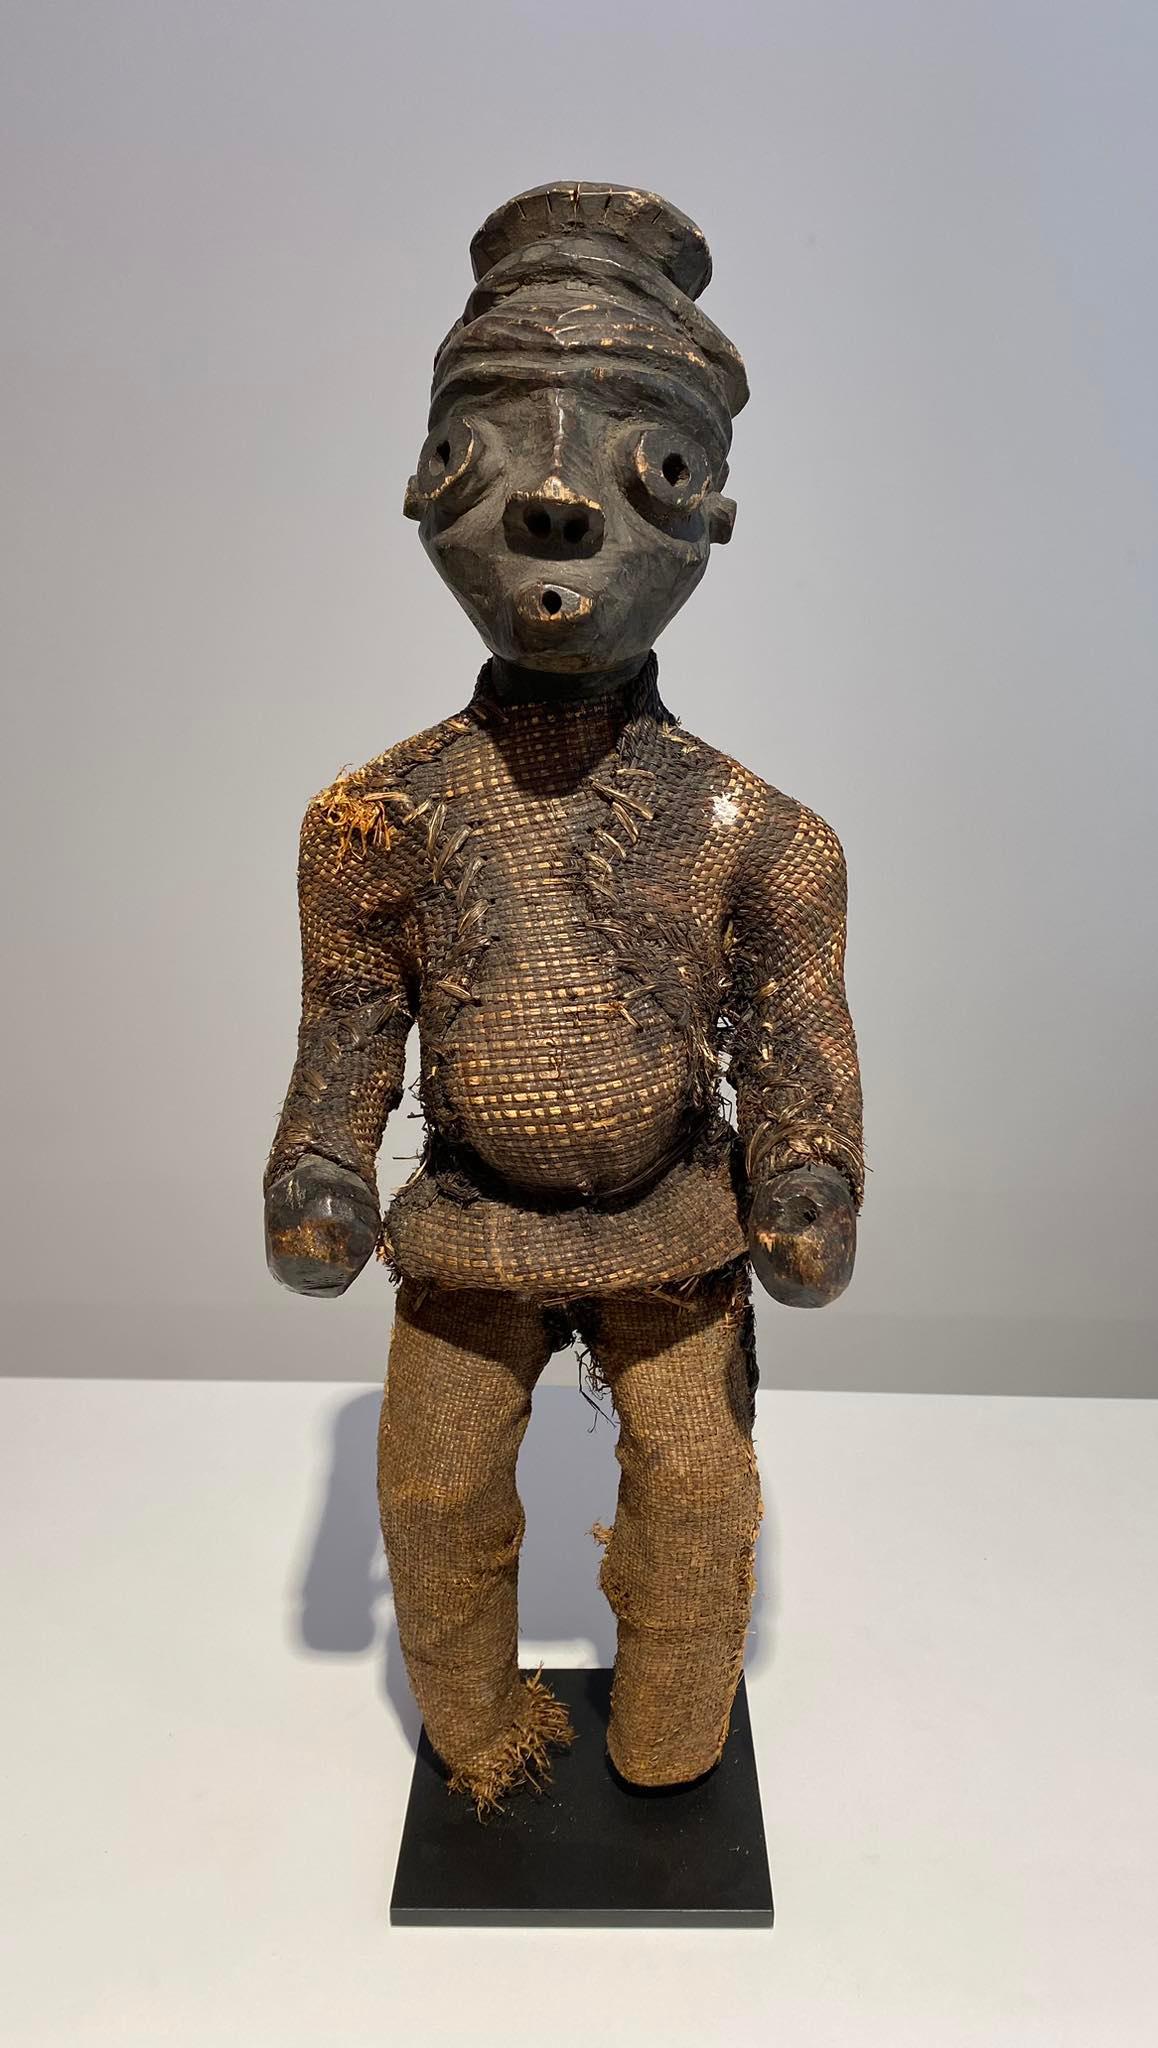 Sehr seltene antike und außergewöhnliche anthropomorphe Statue des Pende-Stammes 
Land : DRKongo Region Kasaï 
Alter : Ende 19. Jahrhundert
Höhe : 48 cm
Ausgezeichneter Zustand  / Fehlen der Füße